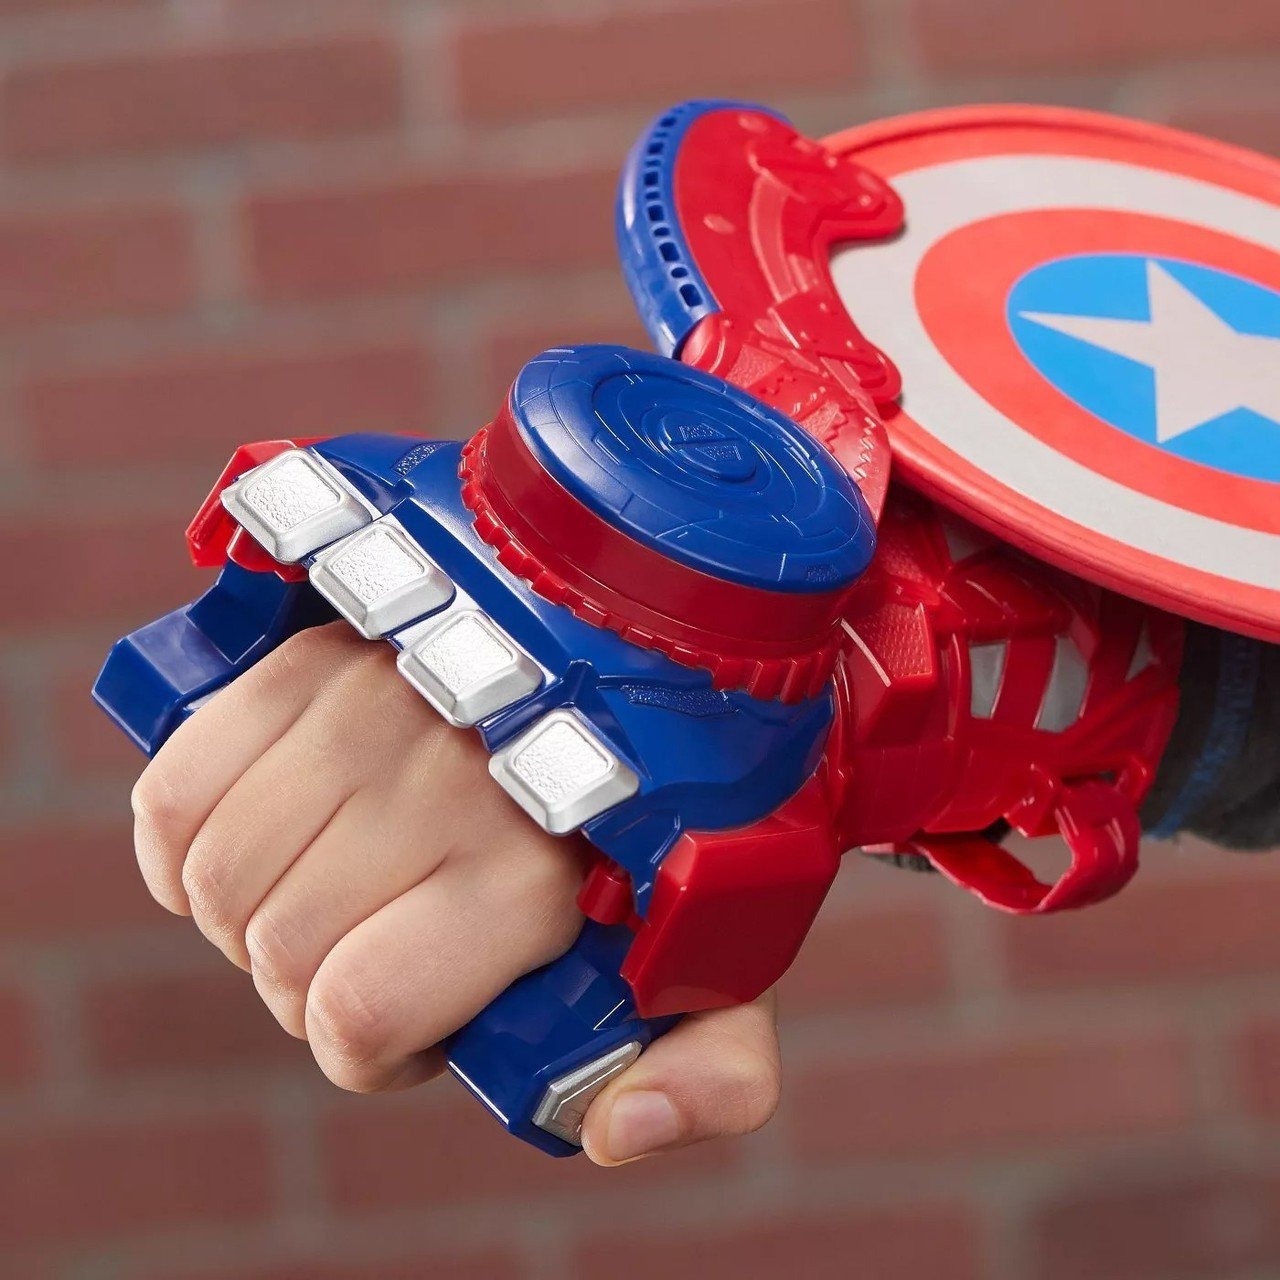 NERF Power Moves - Captain America 